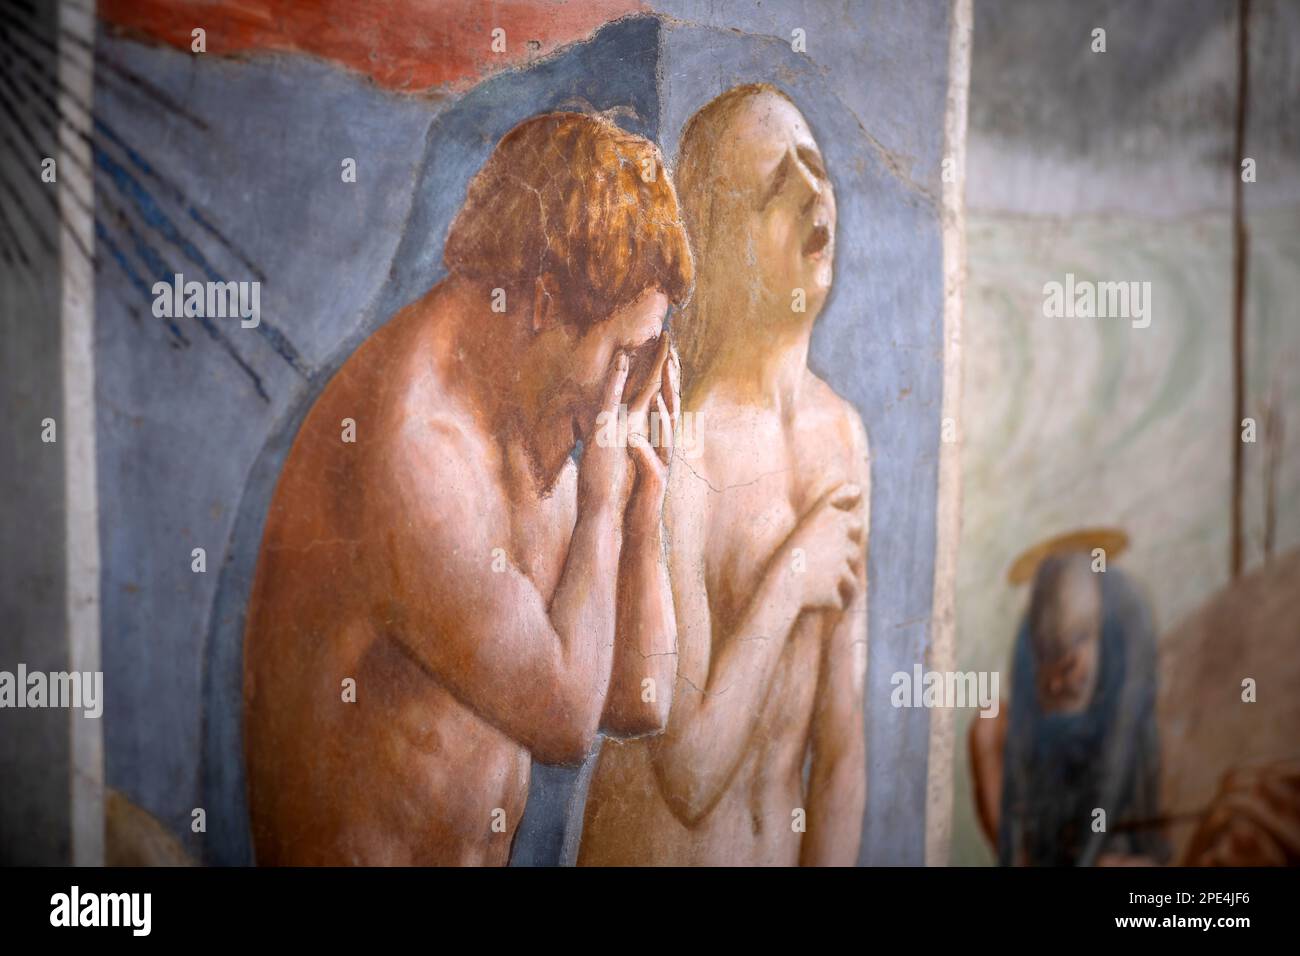 Sono in corso lavori di restauro dei famosi affreschi della Cappella Branacci di Firenze. Tour limitati di poco tempo tra le impalcature Foto Stock